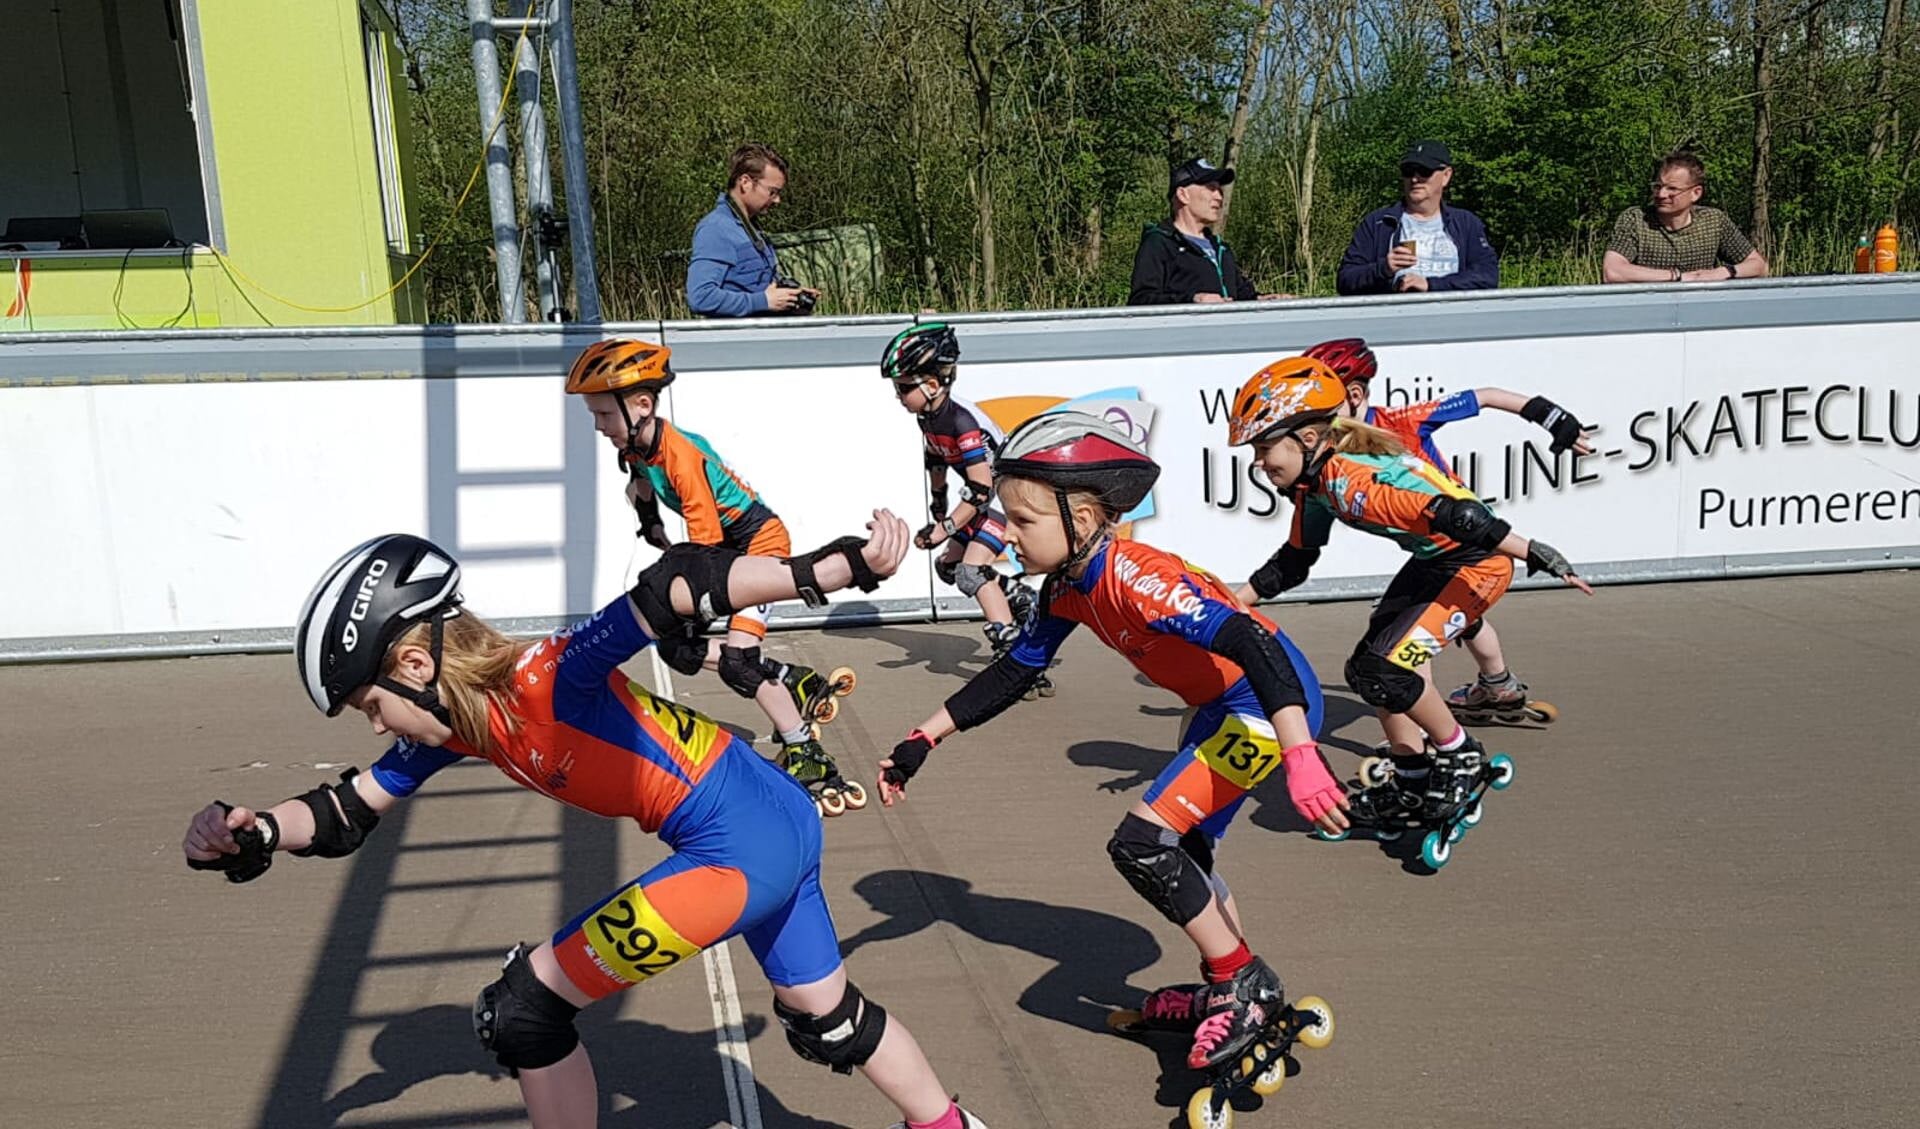 Bij het nationale pupillentoernooi probeert jonge inline-skatende jeugd uit heel Nederland een gooi te doen naar de titel nationaal kampioen. (Foto: IJs en Inline-skateclub Purmerend)